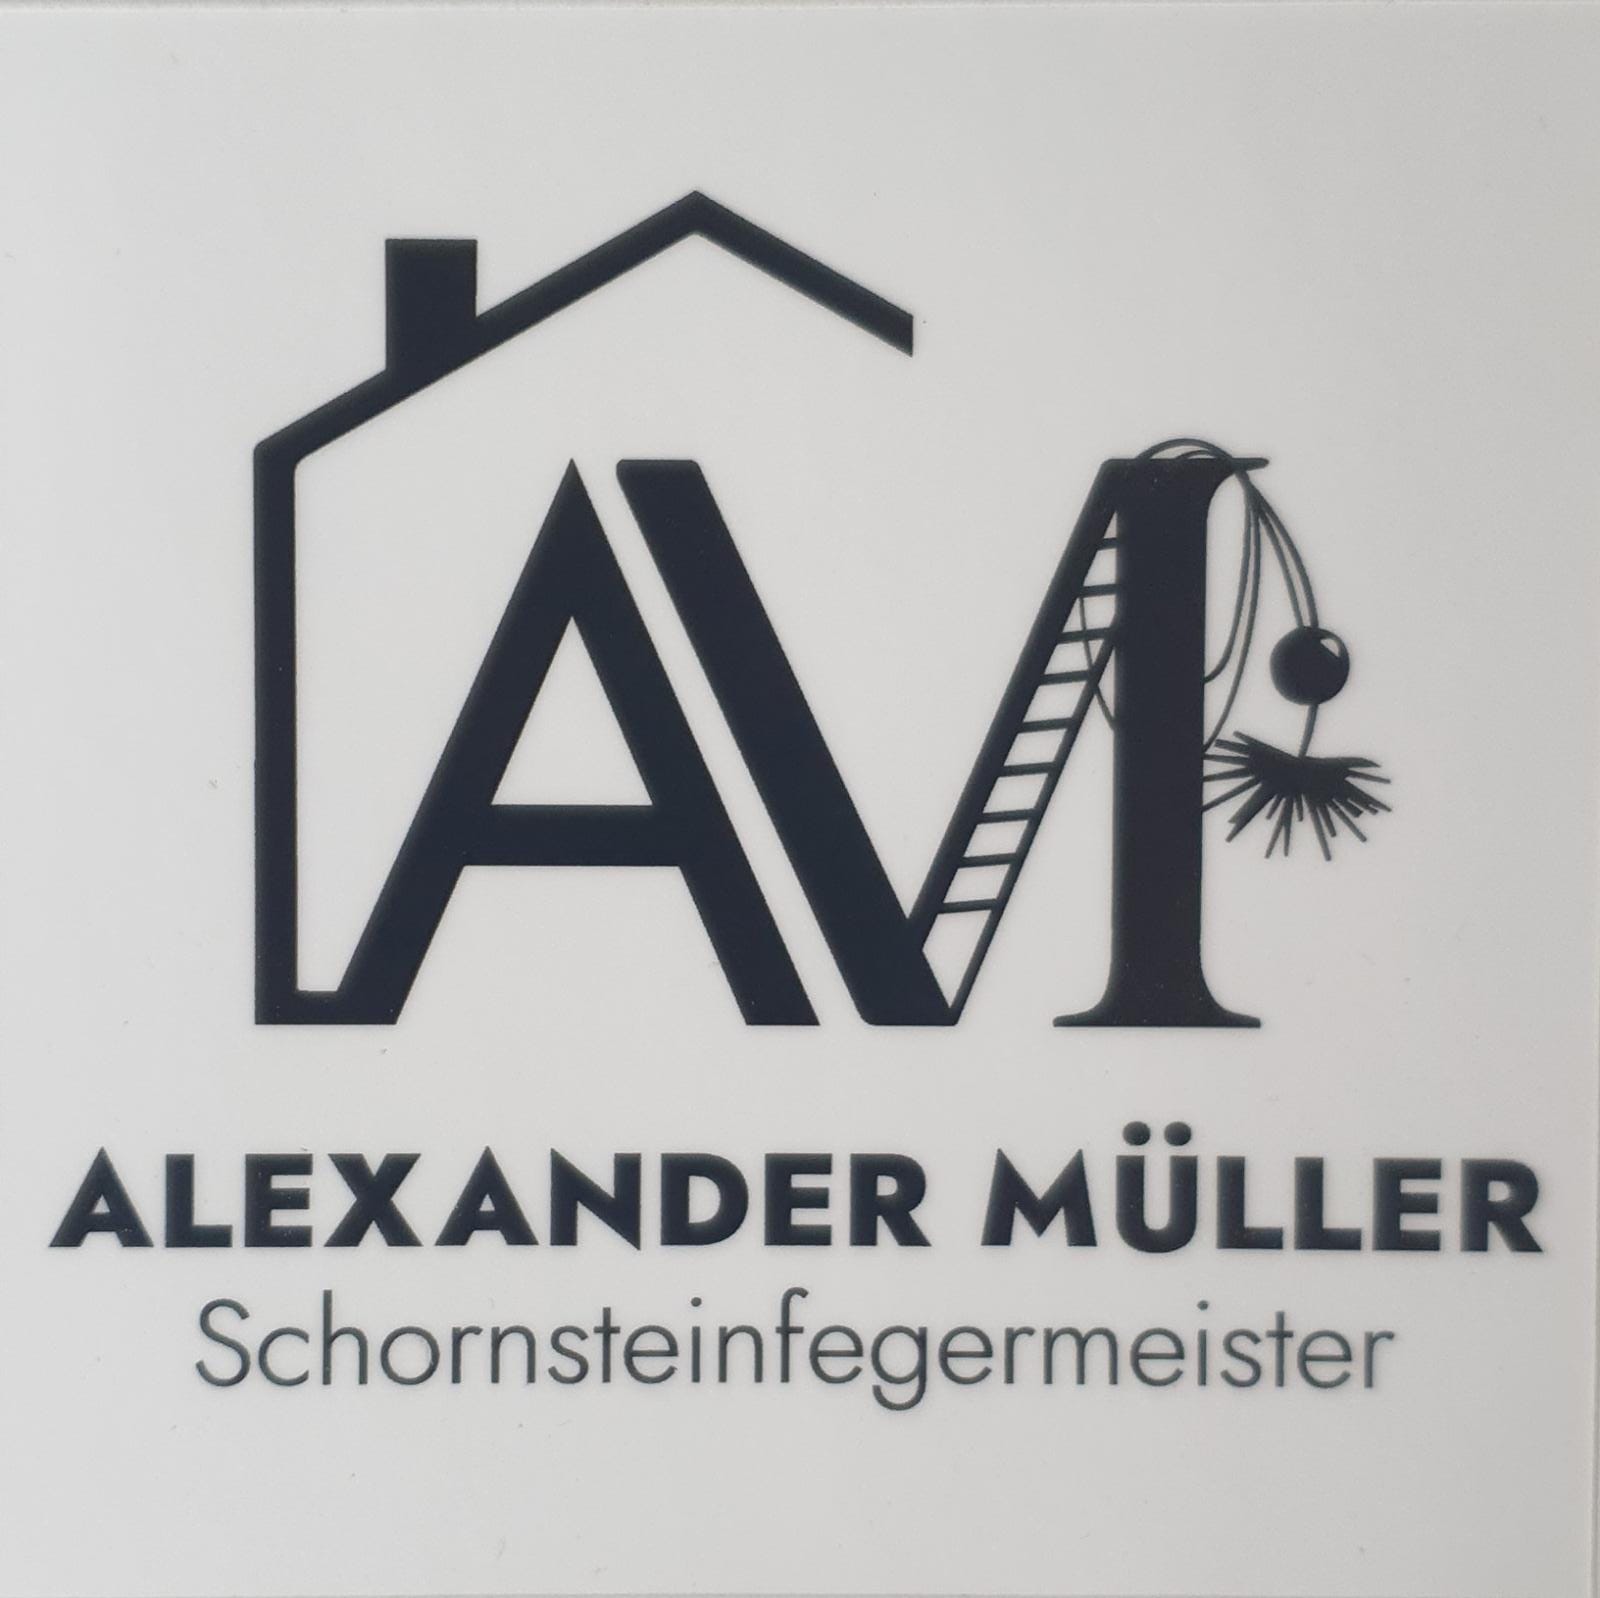 Schornsteinfeger Alexander Müller